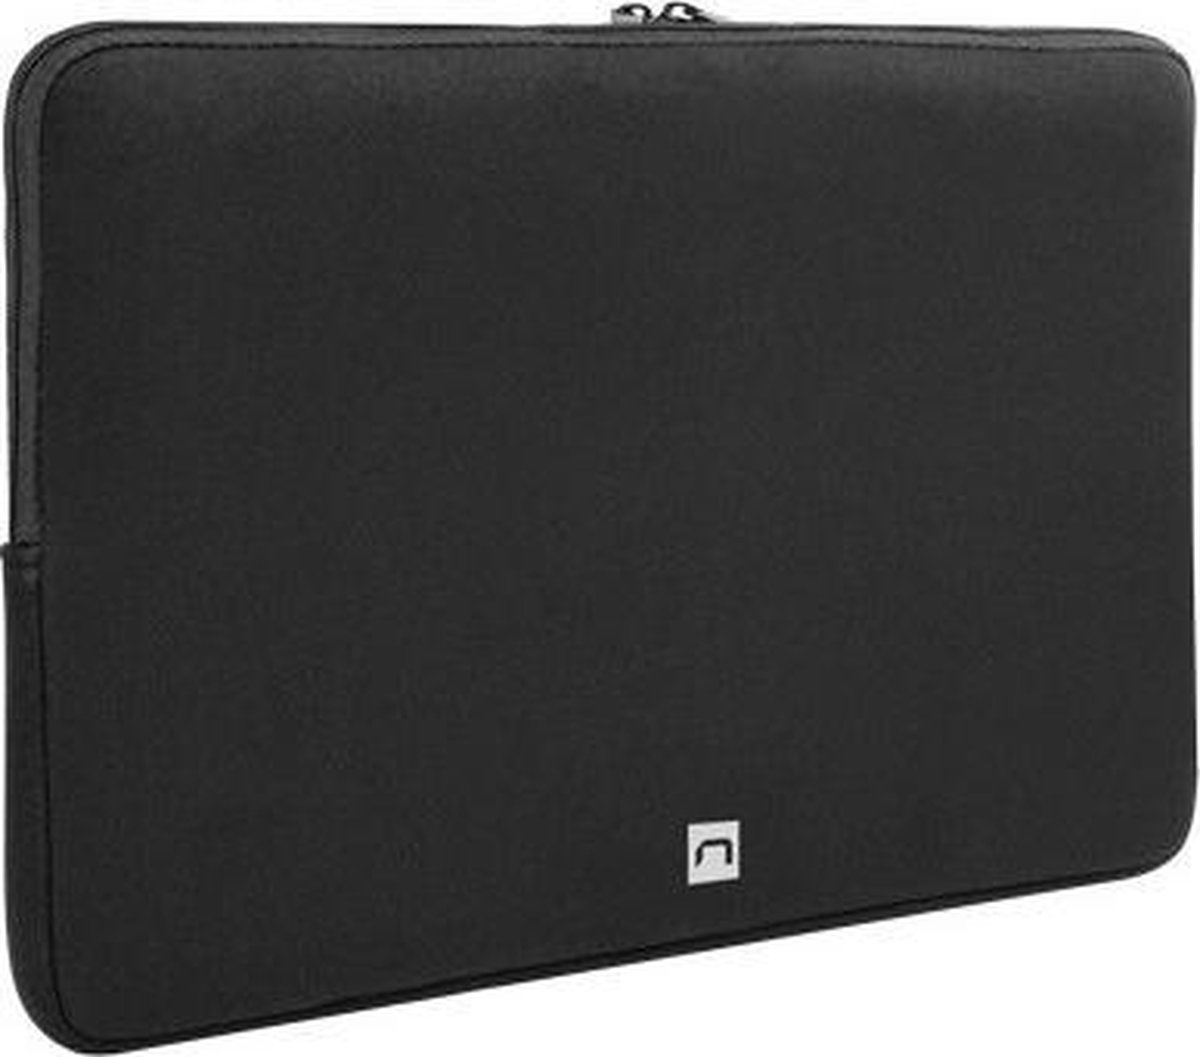 Natec Clam laptop sleeve voor 13.3 inch laptops - Zwart